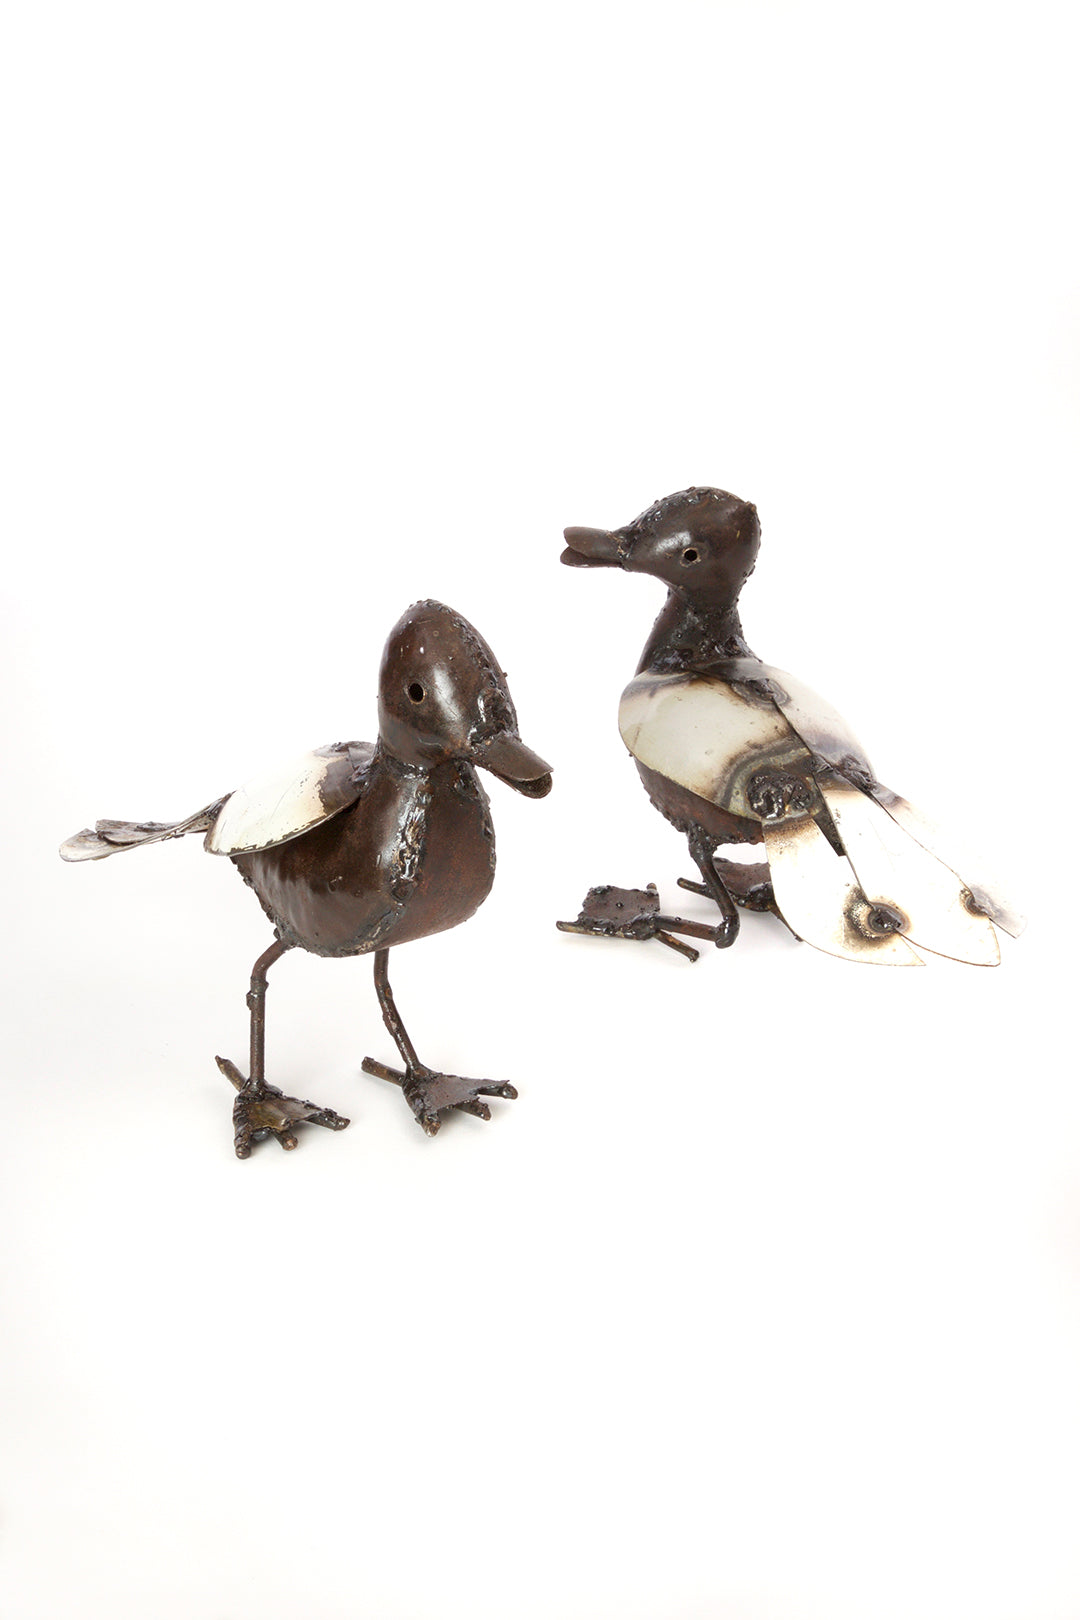 Recycled Metal Duck Sculptures Mama Duck Sculpture